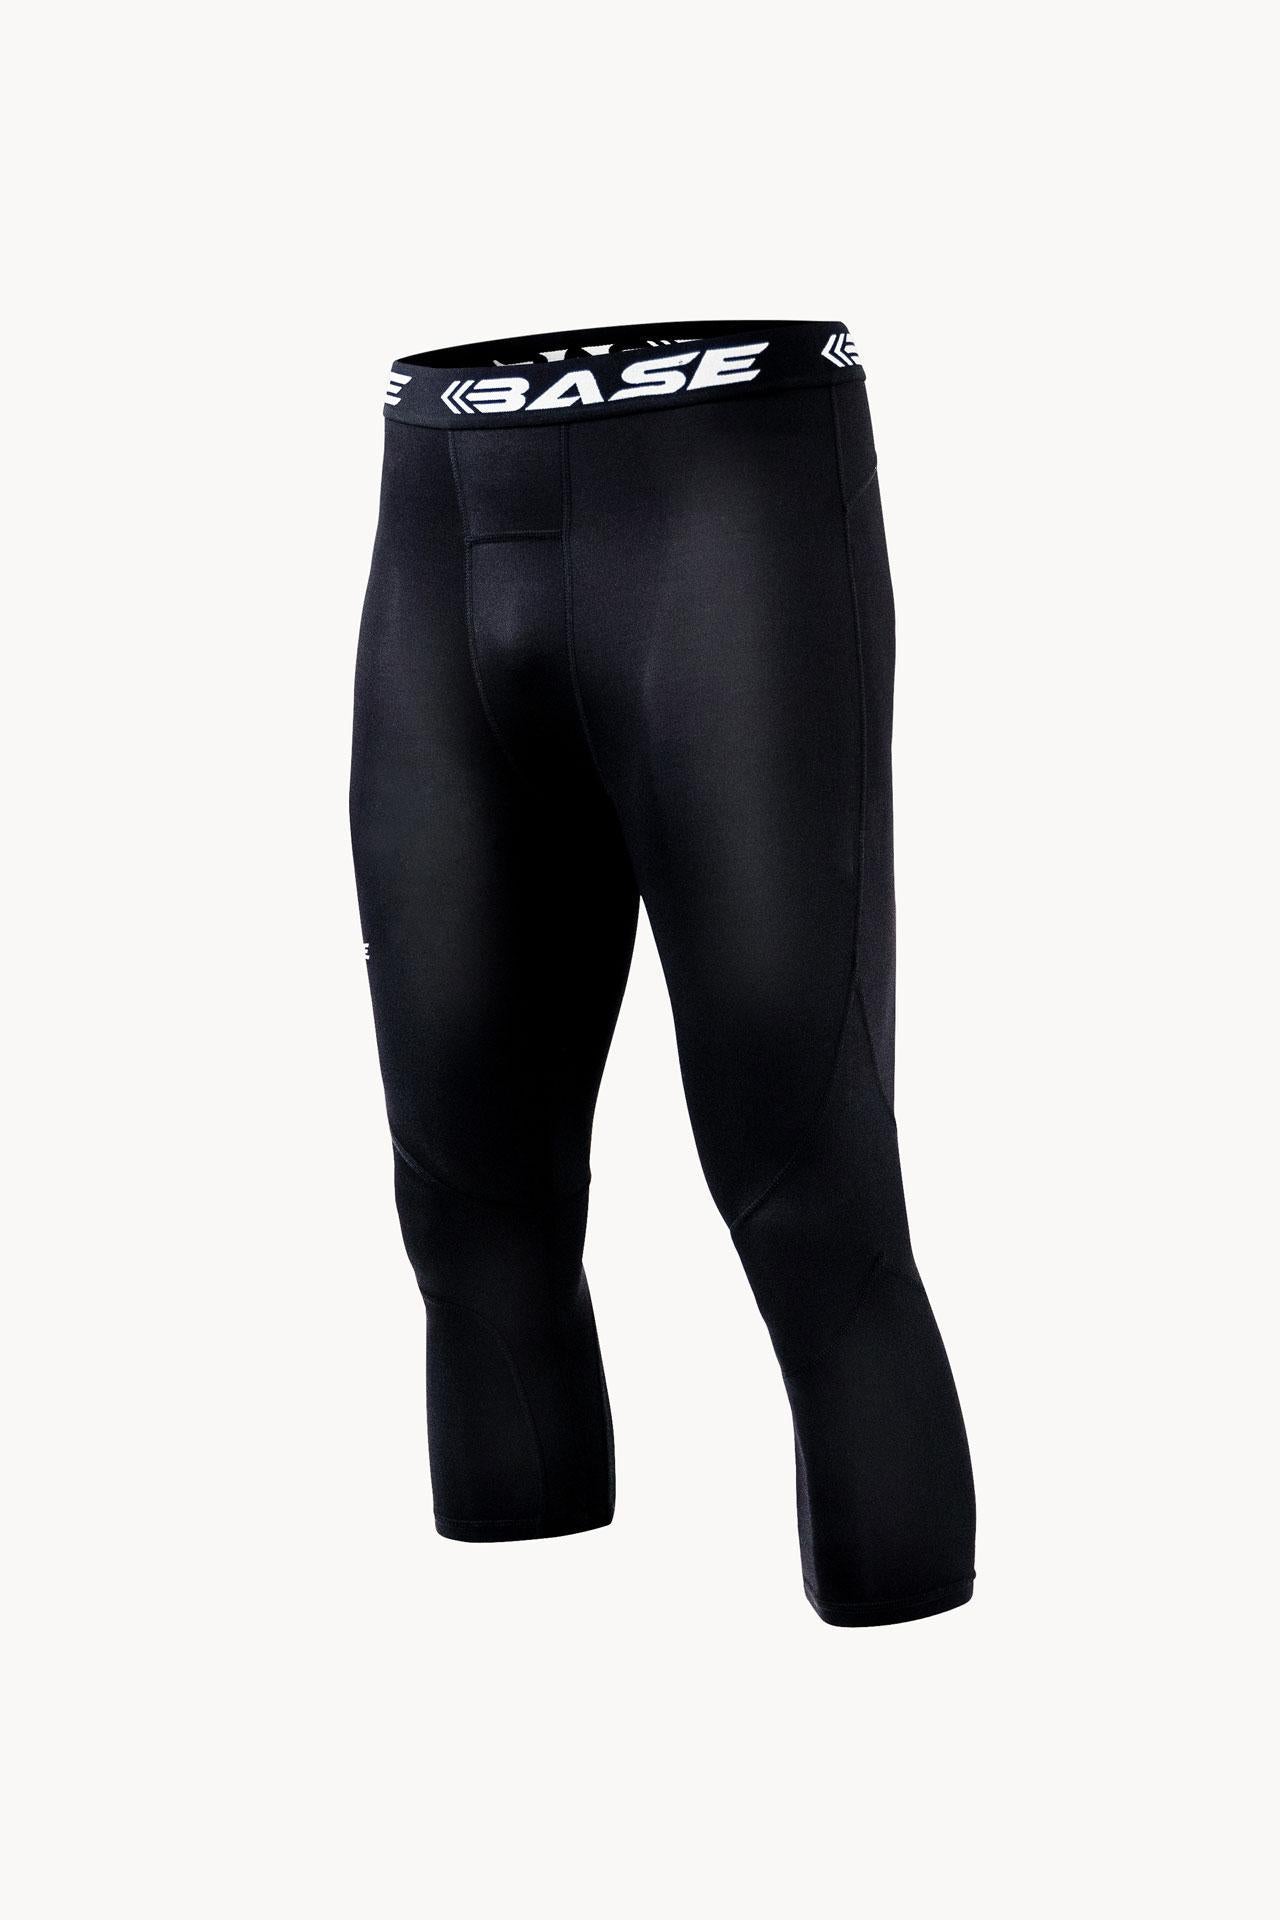 BASE Men's Compression Tights - Black – BASE Compression